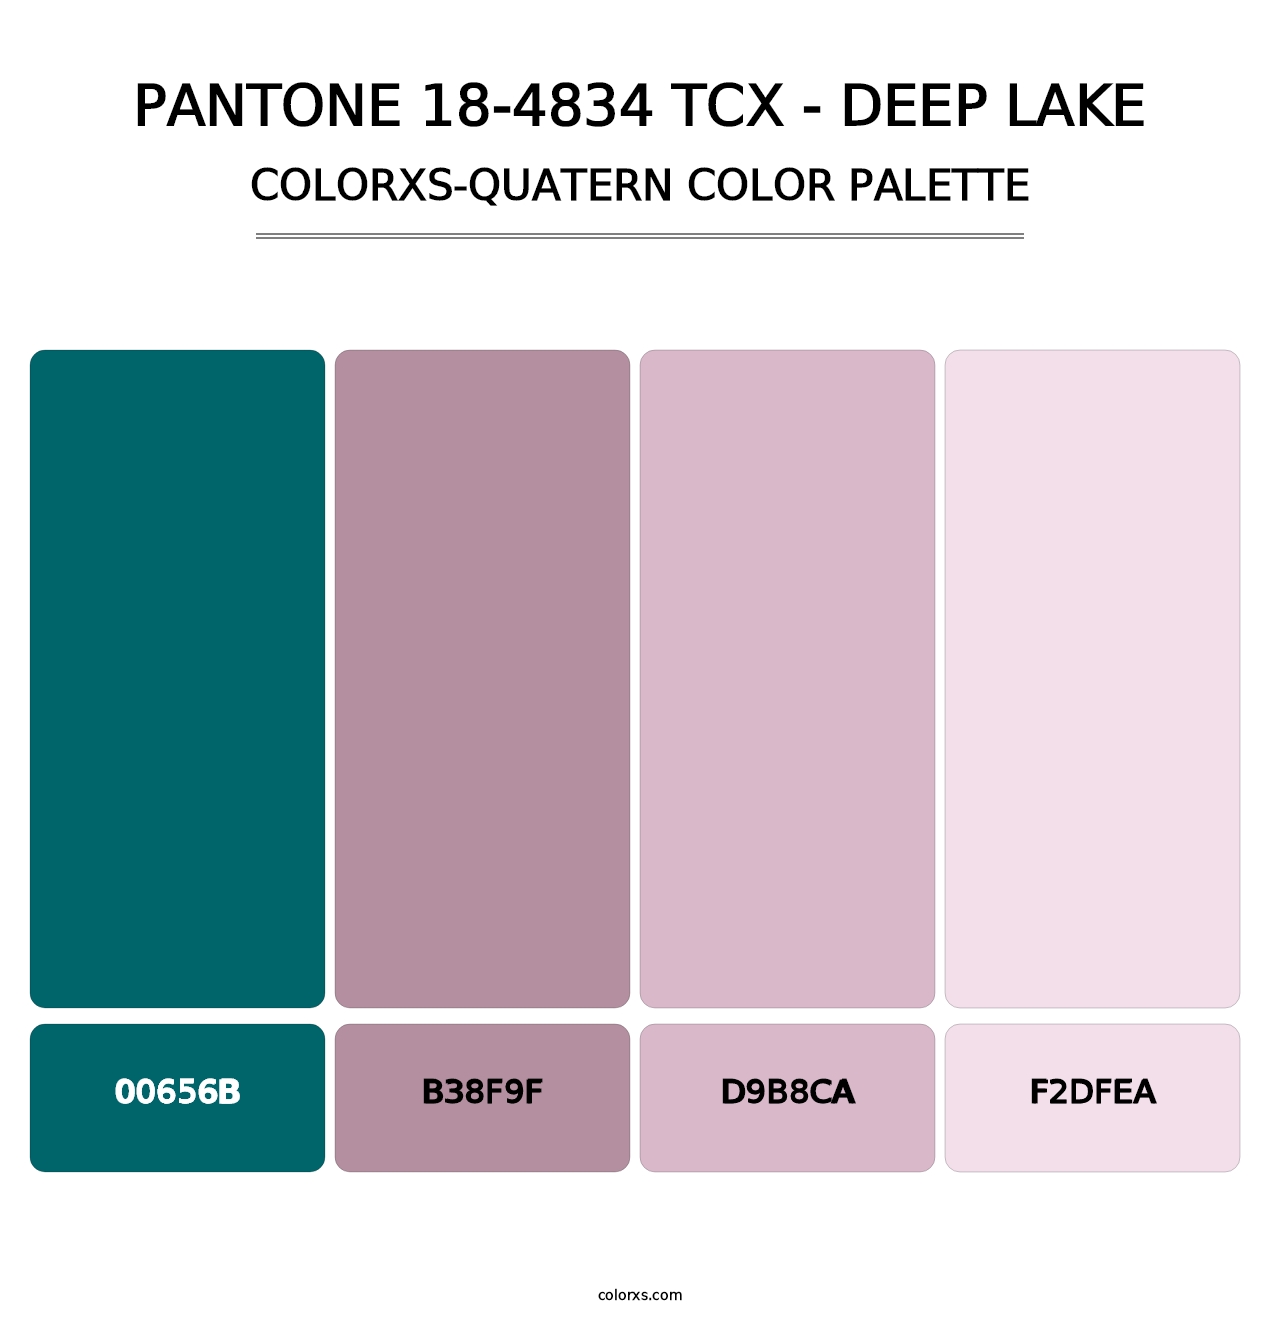 PANTONE 18-4834 TCX - Deep Lake - Colorxs Quatern Palette